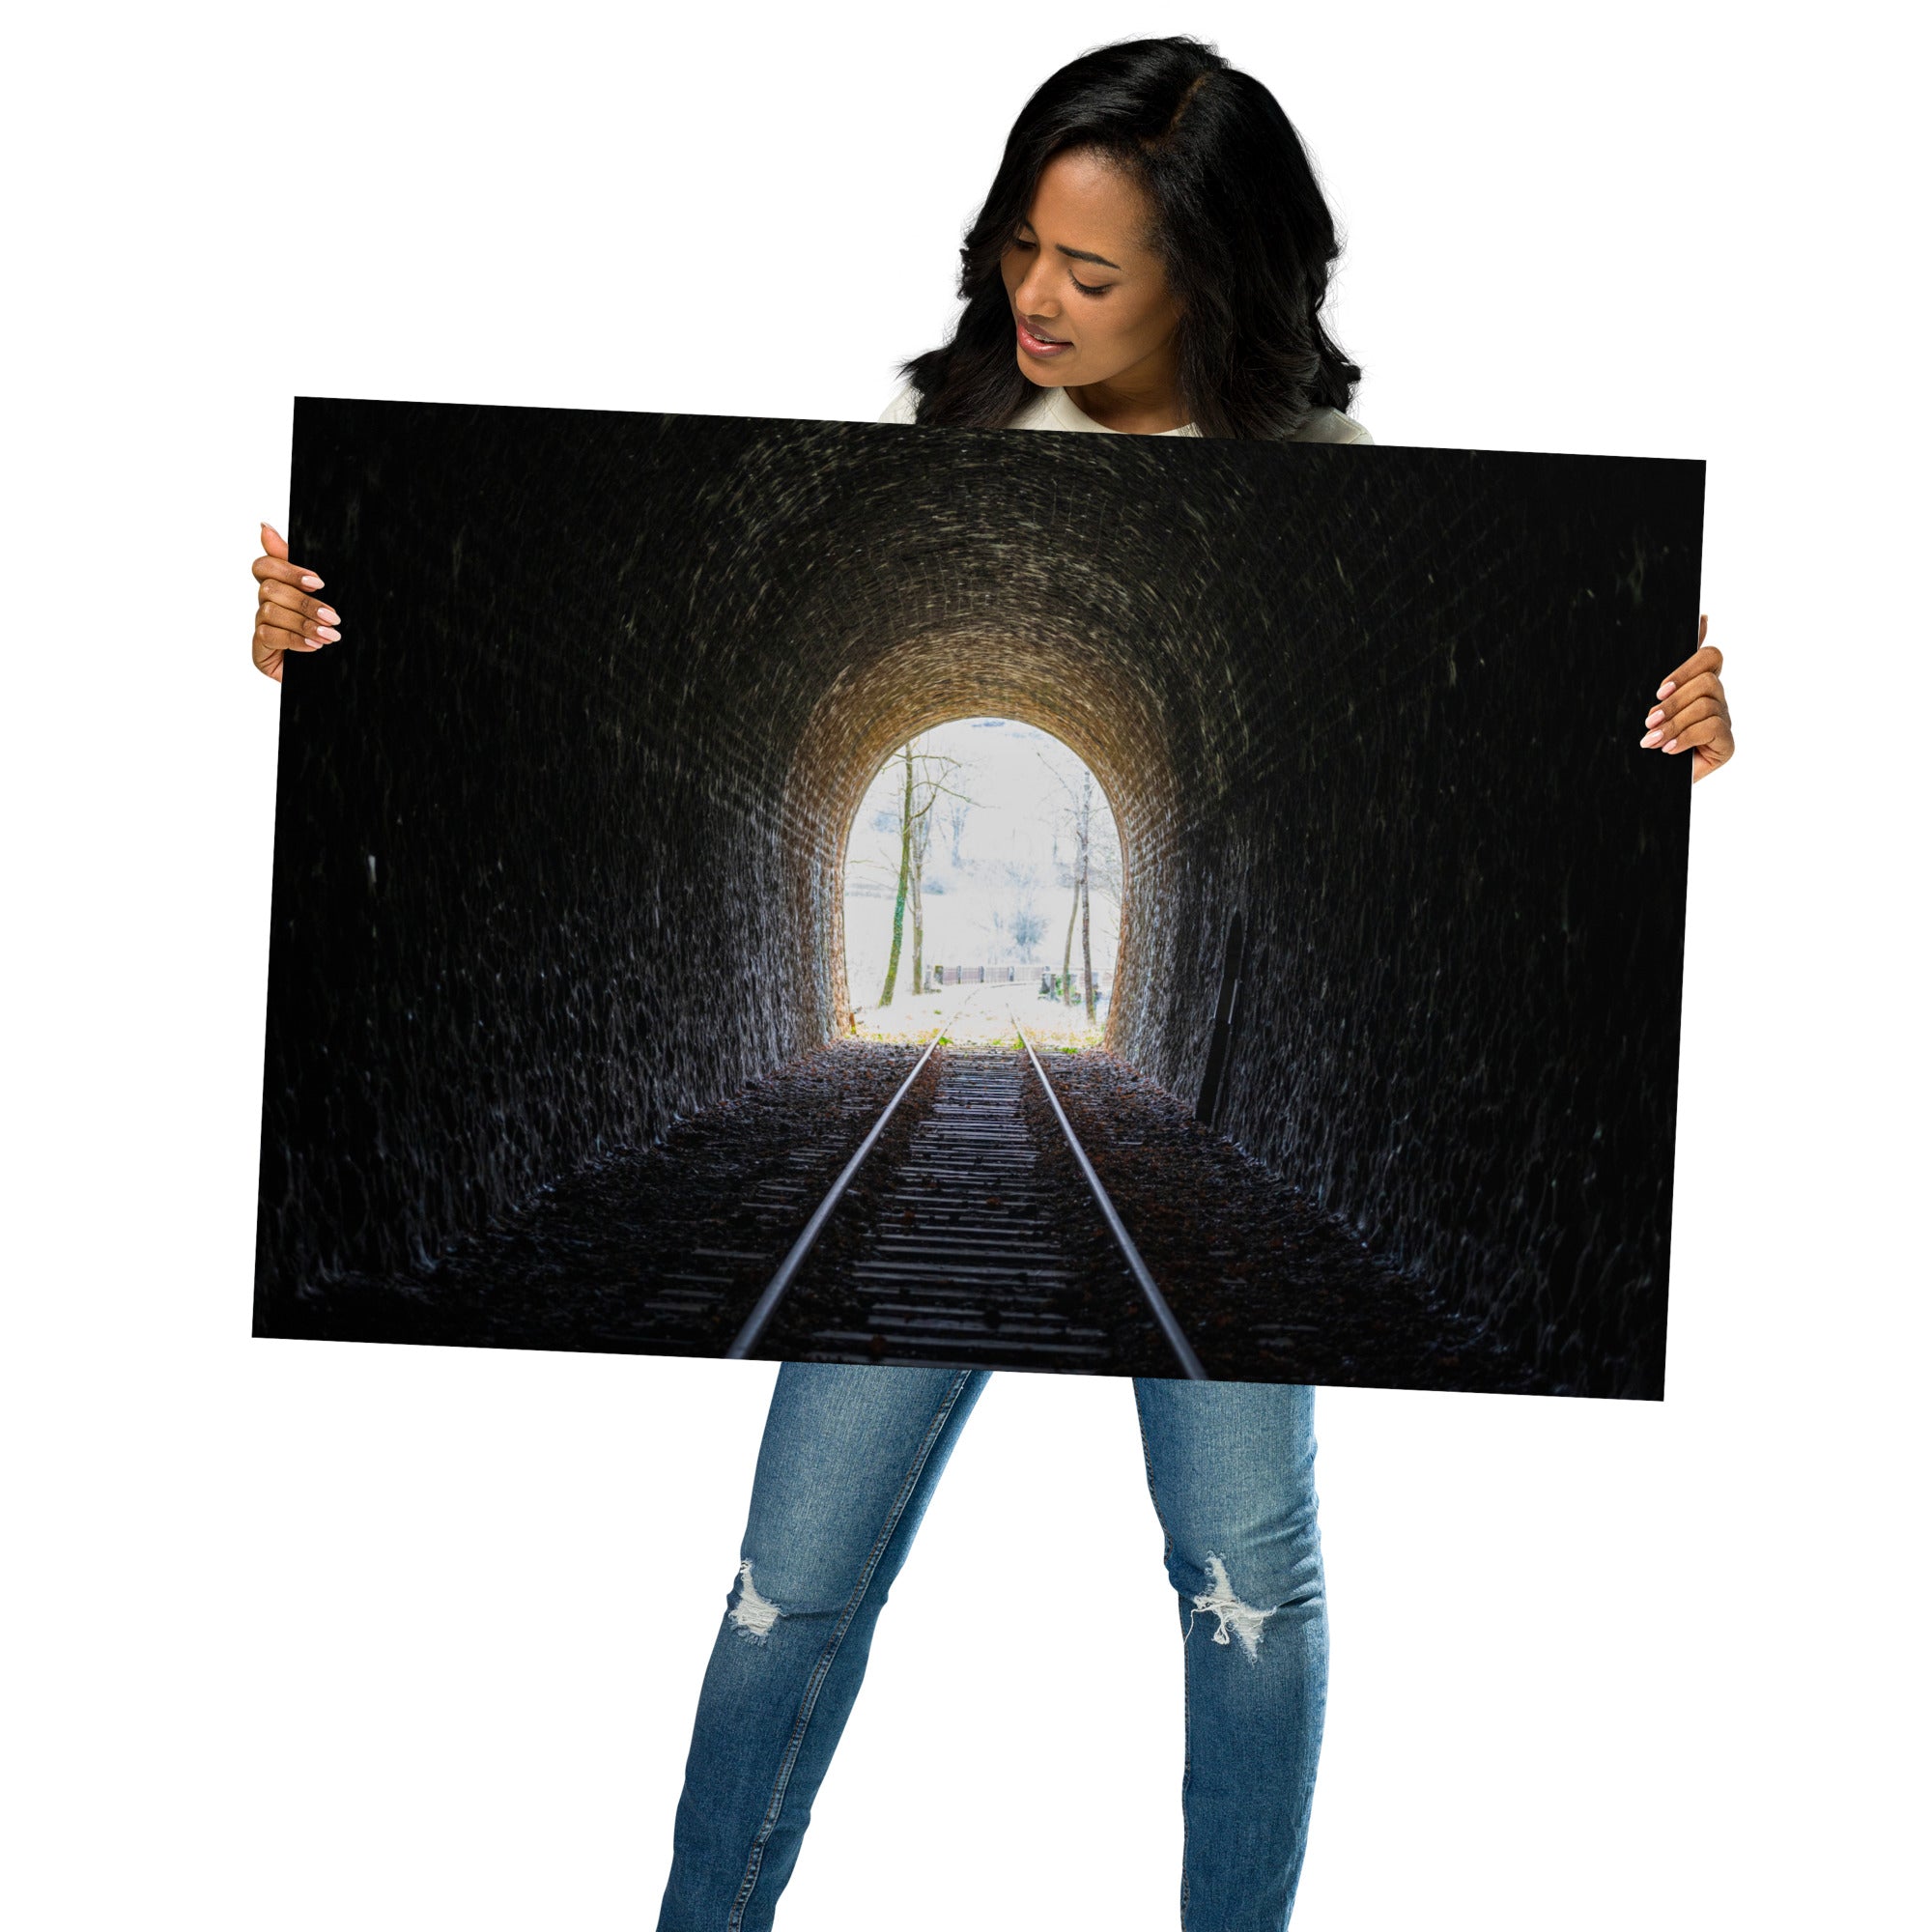 Poster Le Bout du Tunnel, une photographie captivante d'un ancien chemin de fer, idéal pour ceux qui cherchent à ajouter une touche d'évasion et de fascination à leur décoration intérieure.